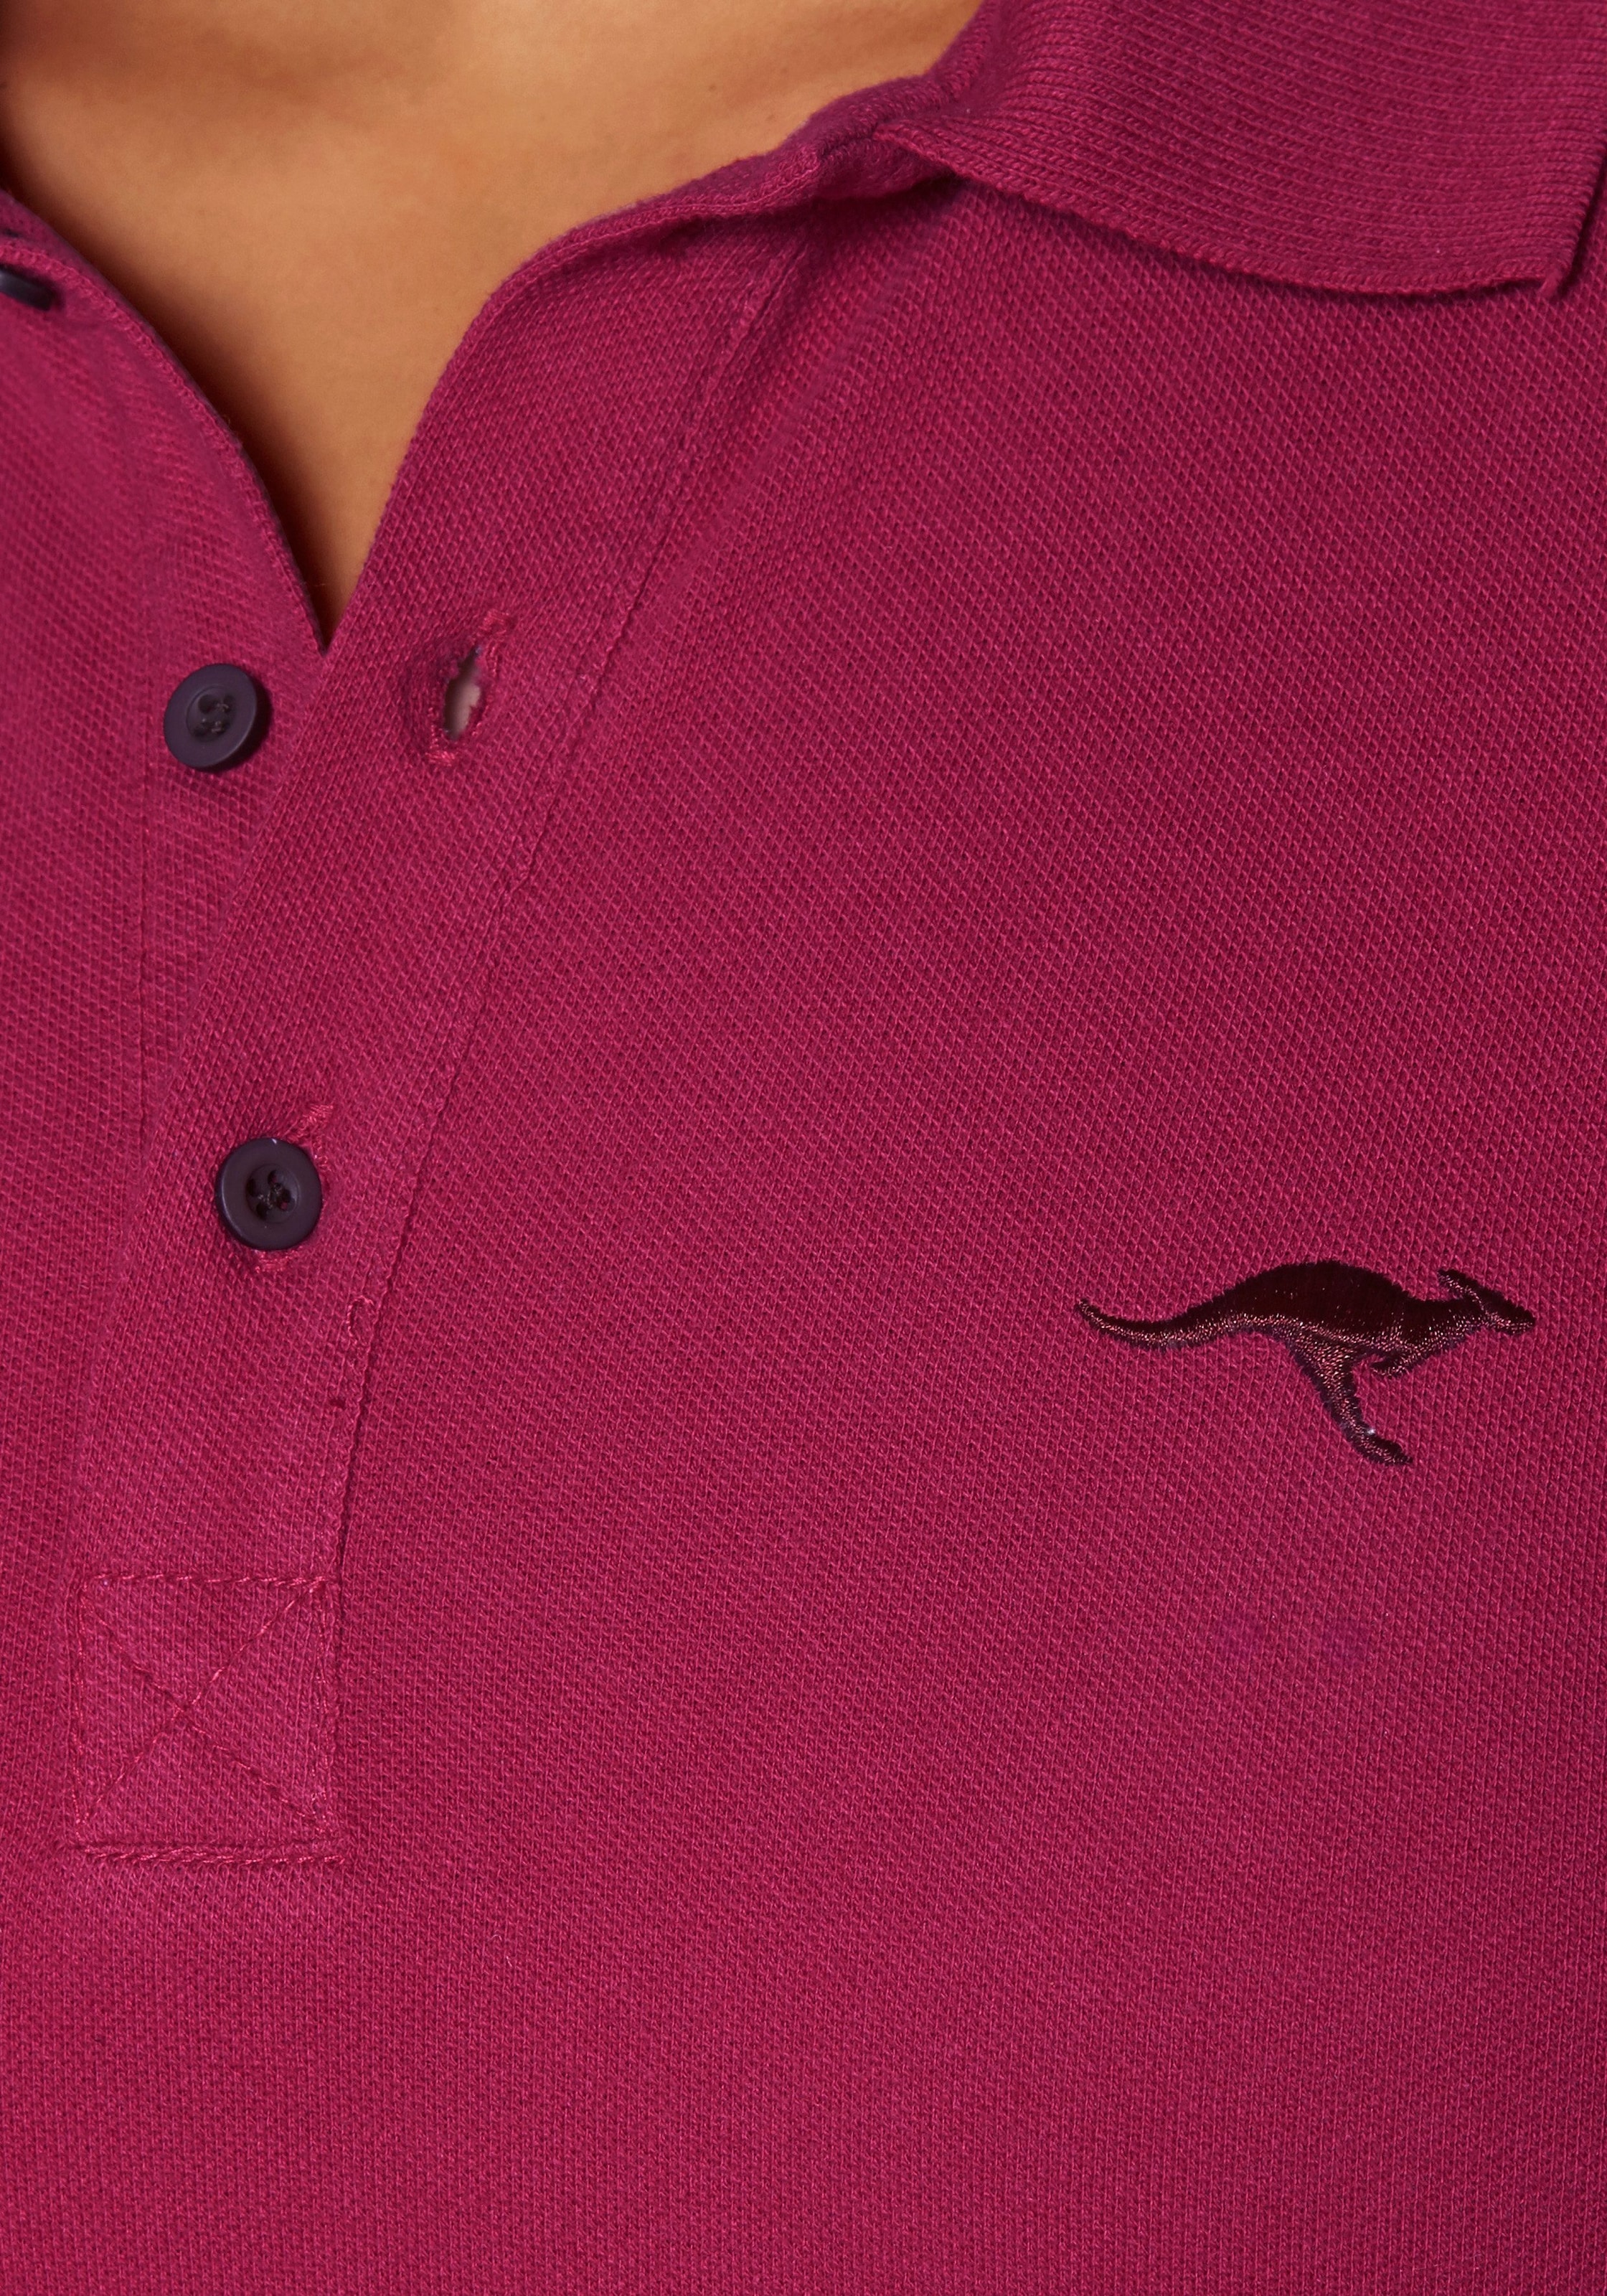 Günstig und beliebt KangaROOS Poloshirt, Große Größen für kaufen | BAUR